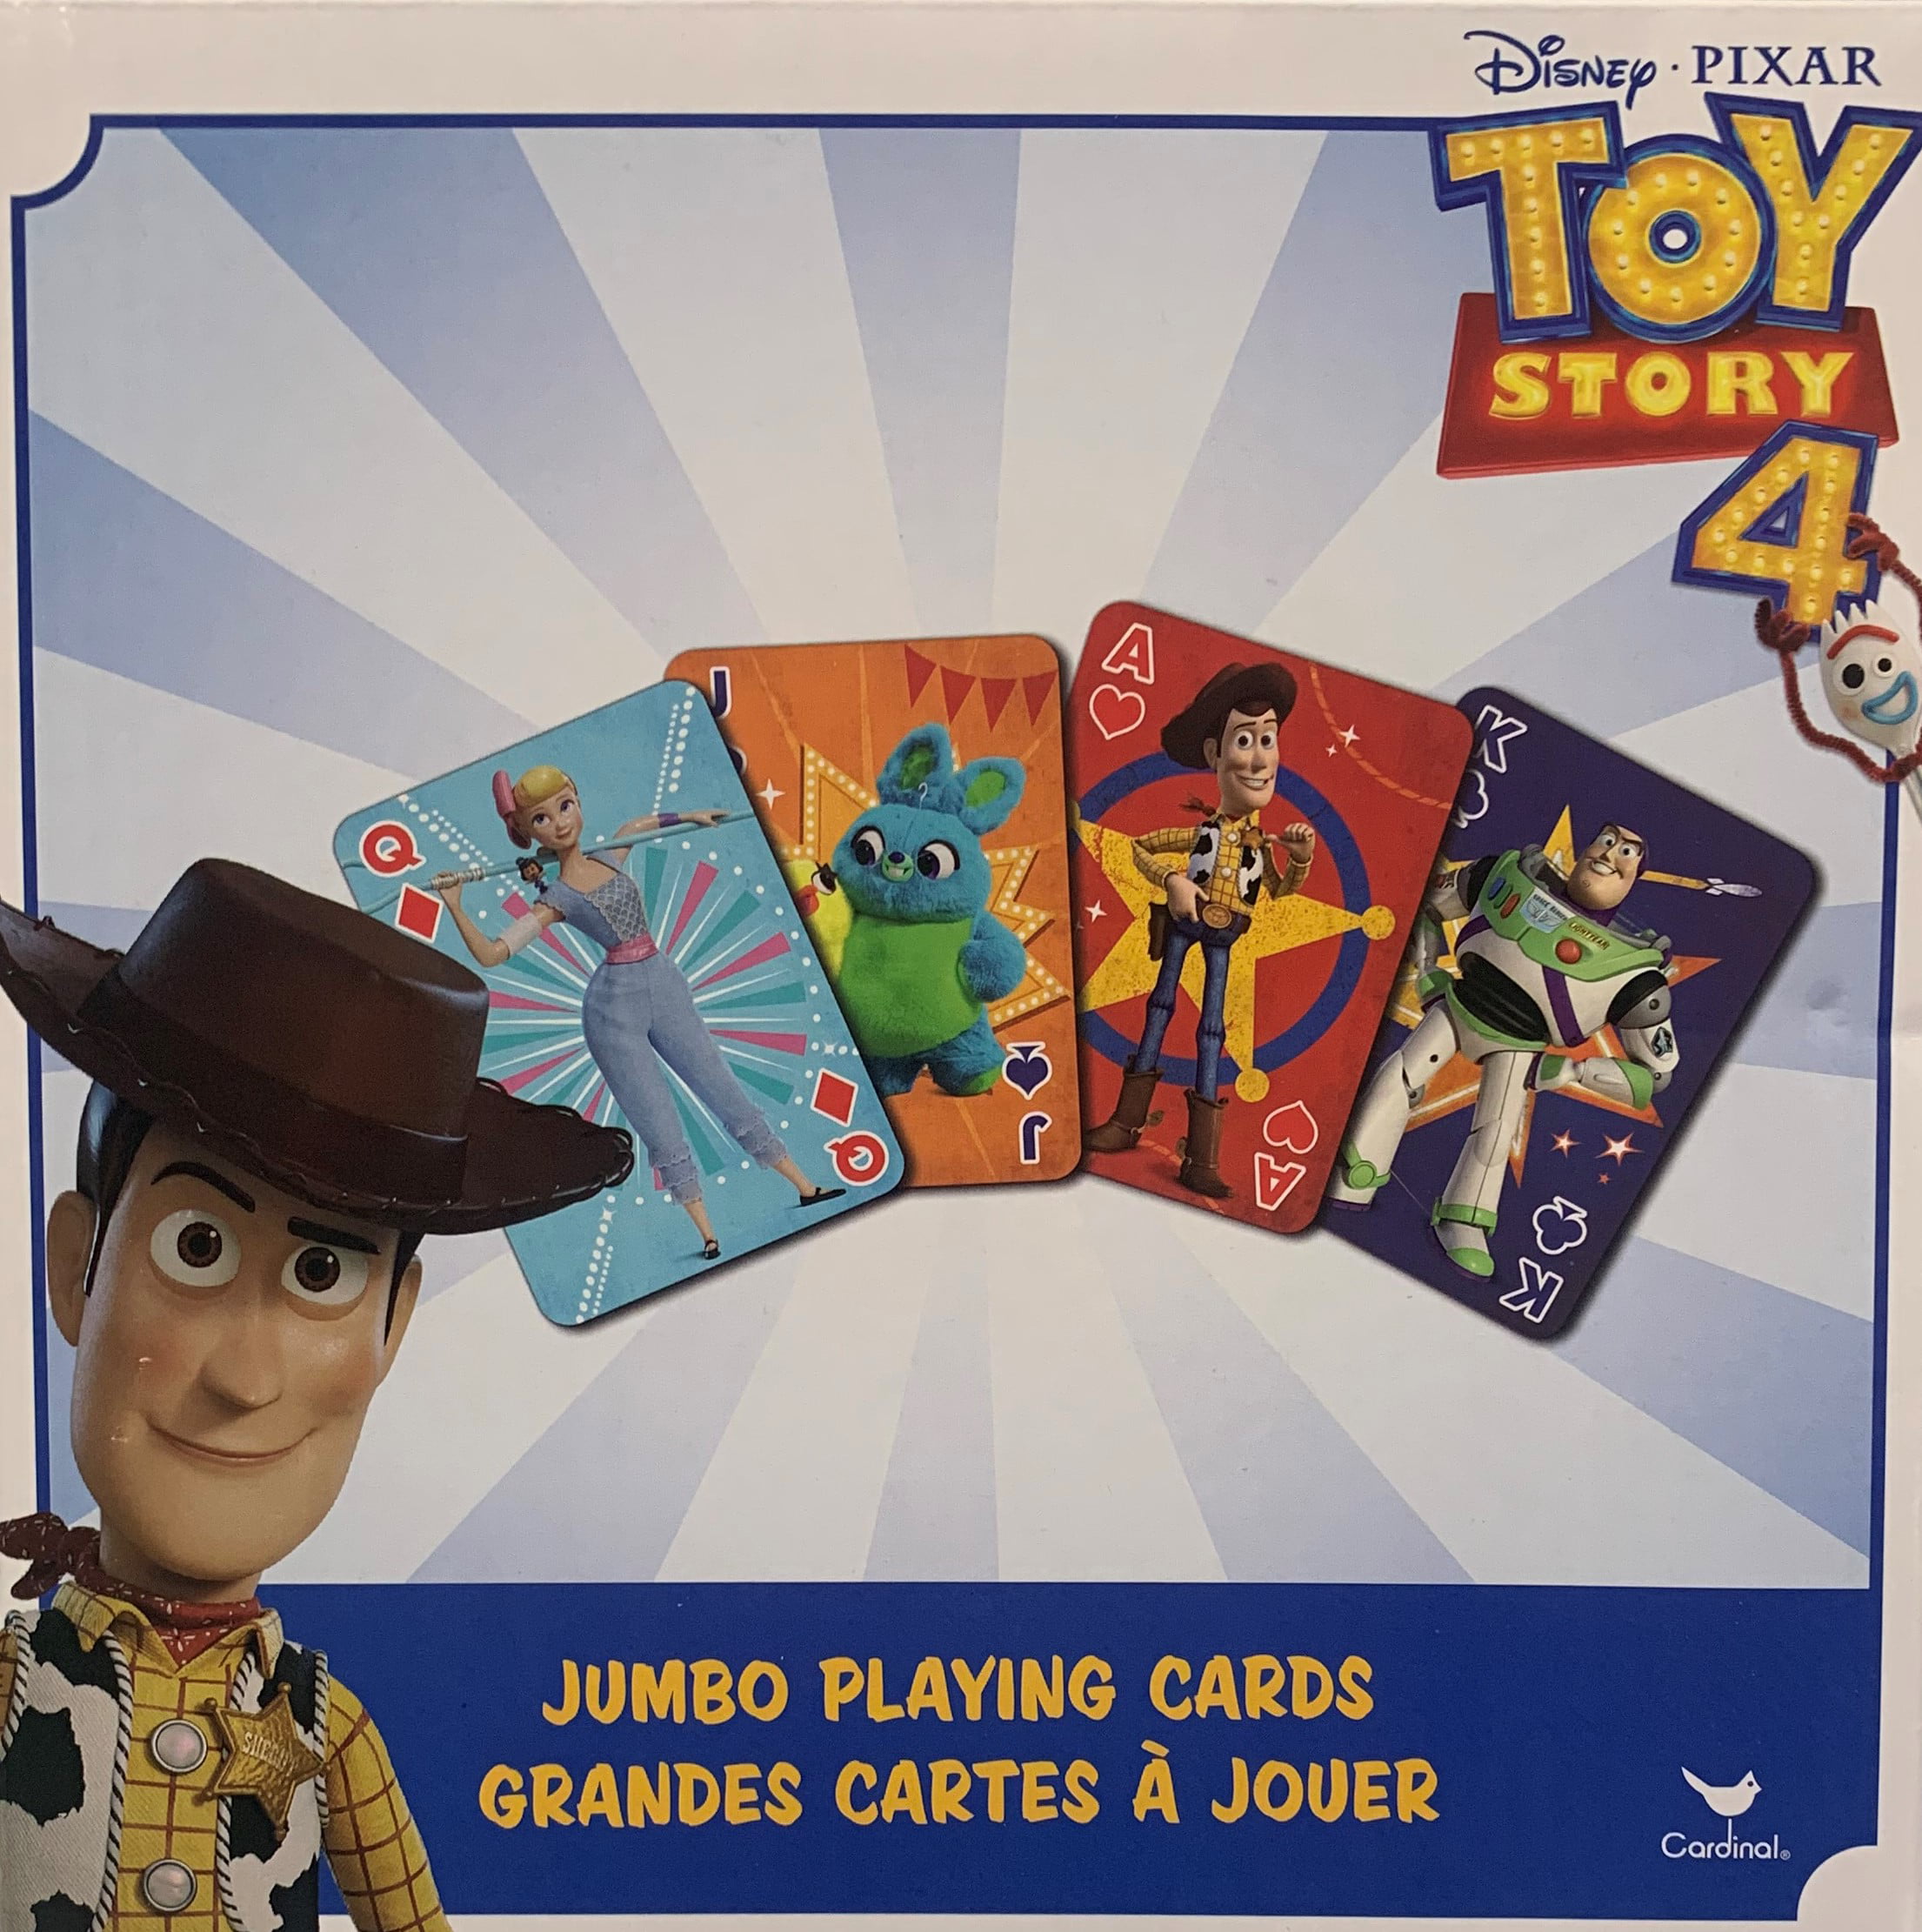 Disney Pixar Toy Story 4 JUMBO Playing Card Game Travel Car Toy Kid 